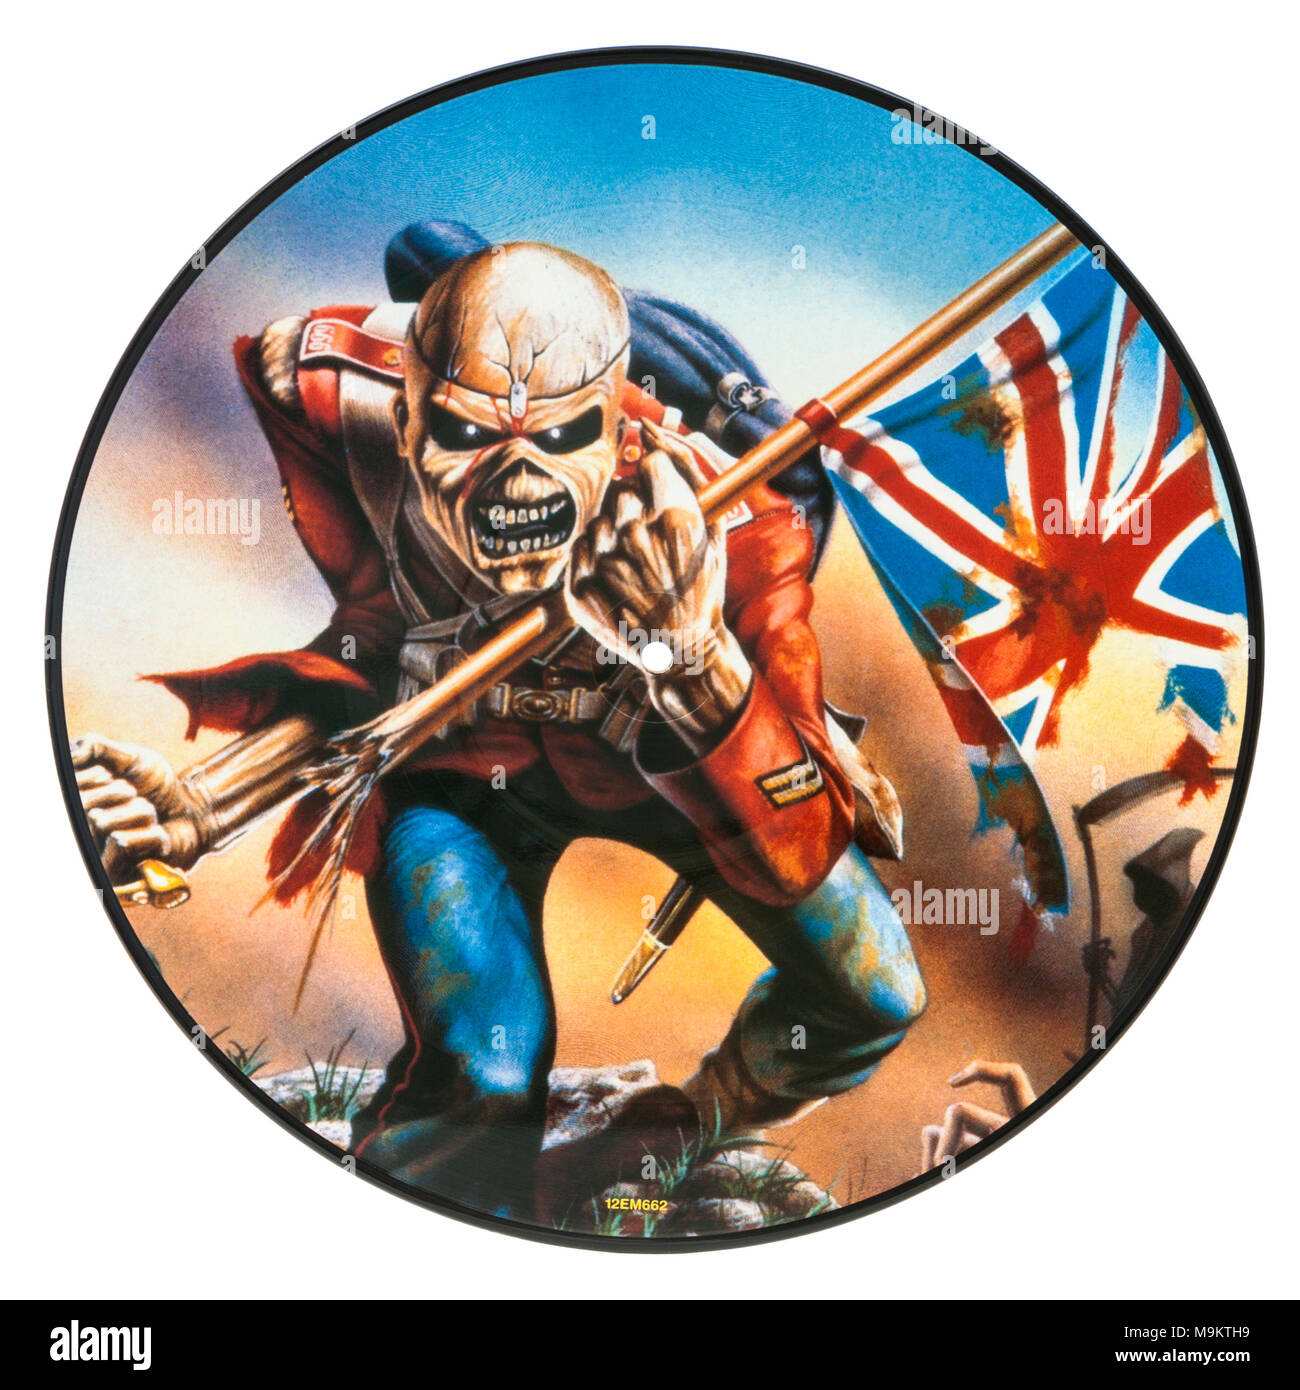 2005 Limited Edition Picture Disc (disco in vinile) dalla British heavy metal band Iron Maiden (il soldato, Live) Foto Stock